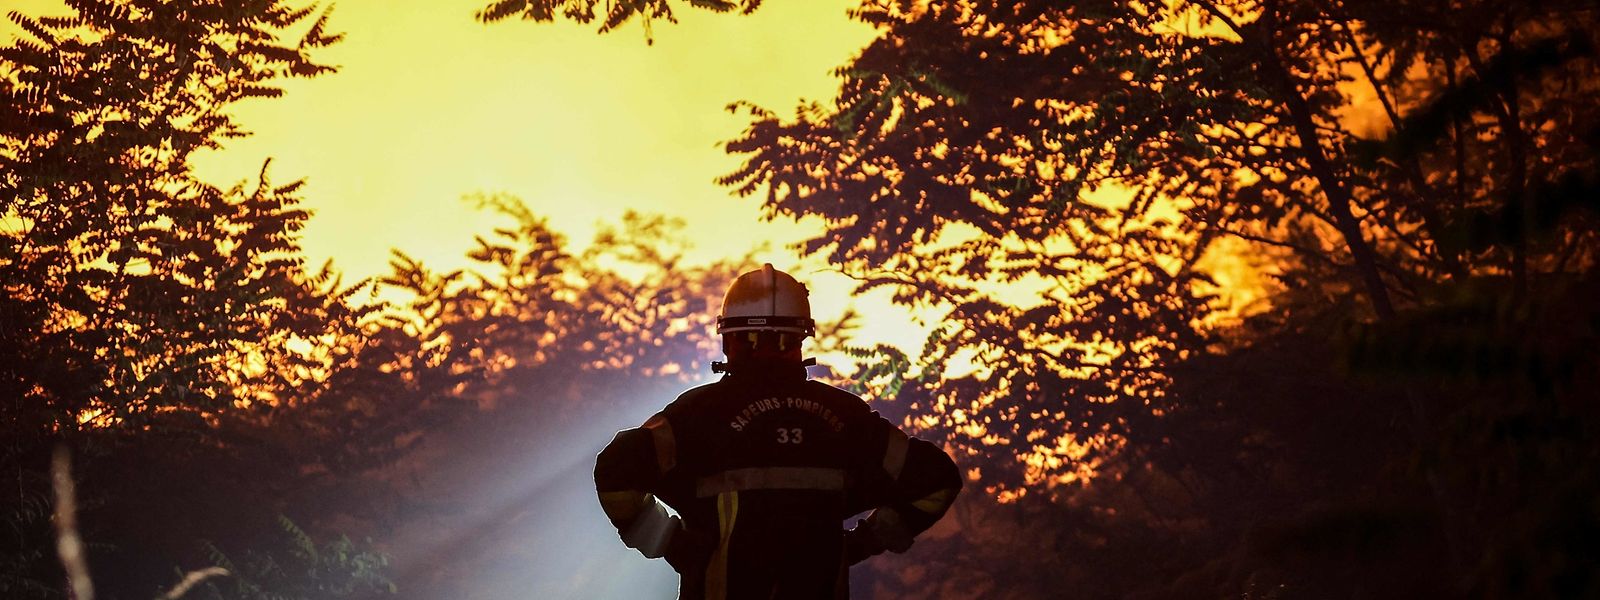 L'été n'aura laissé que peu de répit aux pompiers au regard des feux de forêt qui se sont multipliés ces dernières semaines.